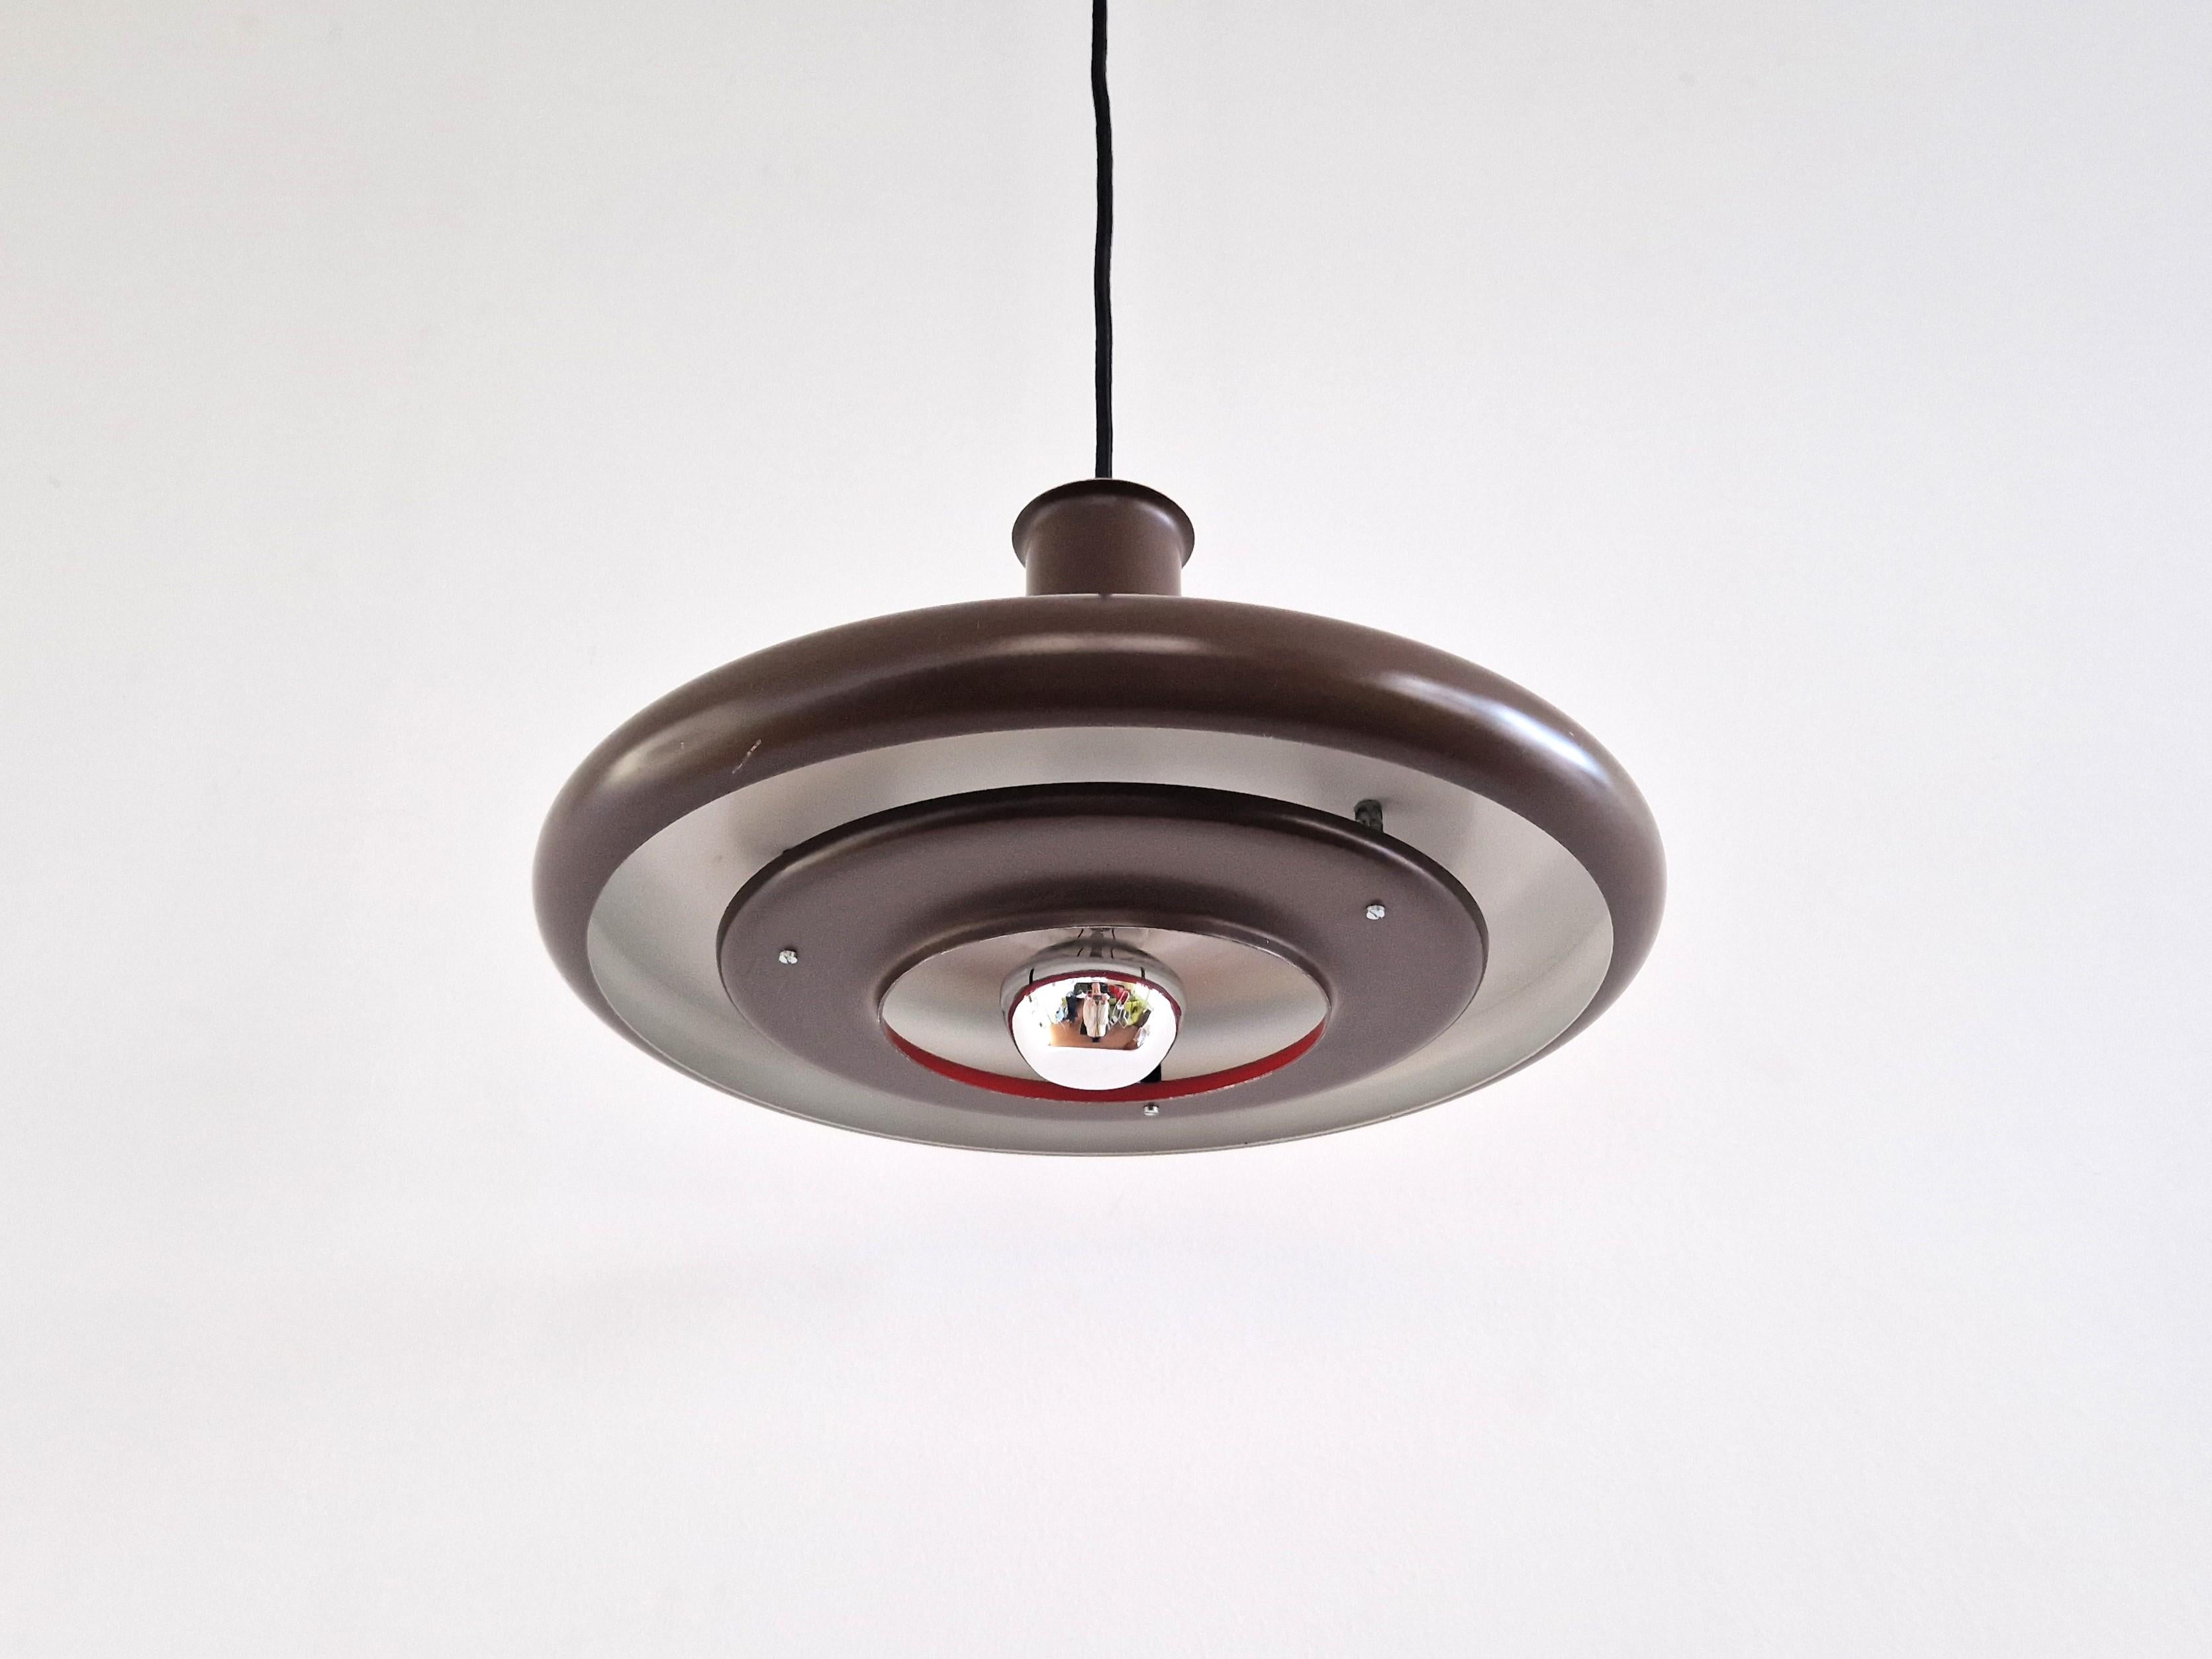 La lampe suspendue Optima a été conçue en 1972 par Hans Due pour Fog & Mørup au Danemark. Cette taille particulière de ø35 cm est apparue vers la fin des années 1970. La lampe est en métal peint en brun. Il possède un grand abat-jour circulaire avec